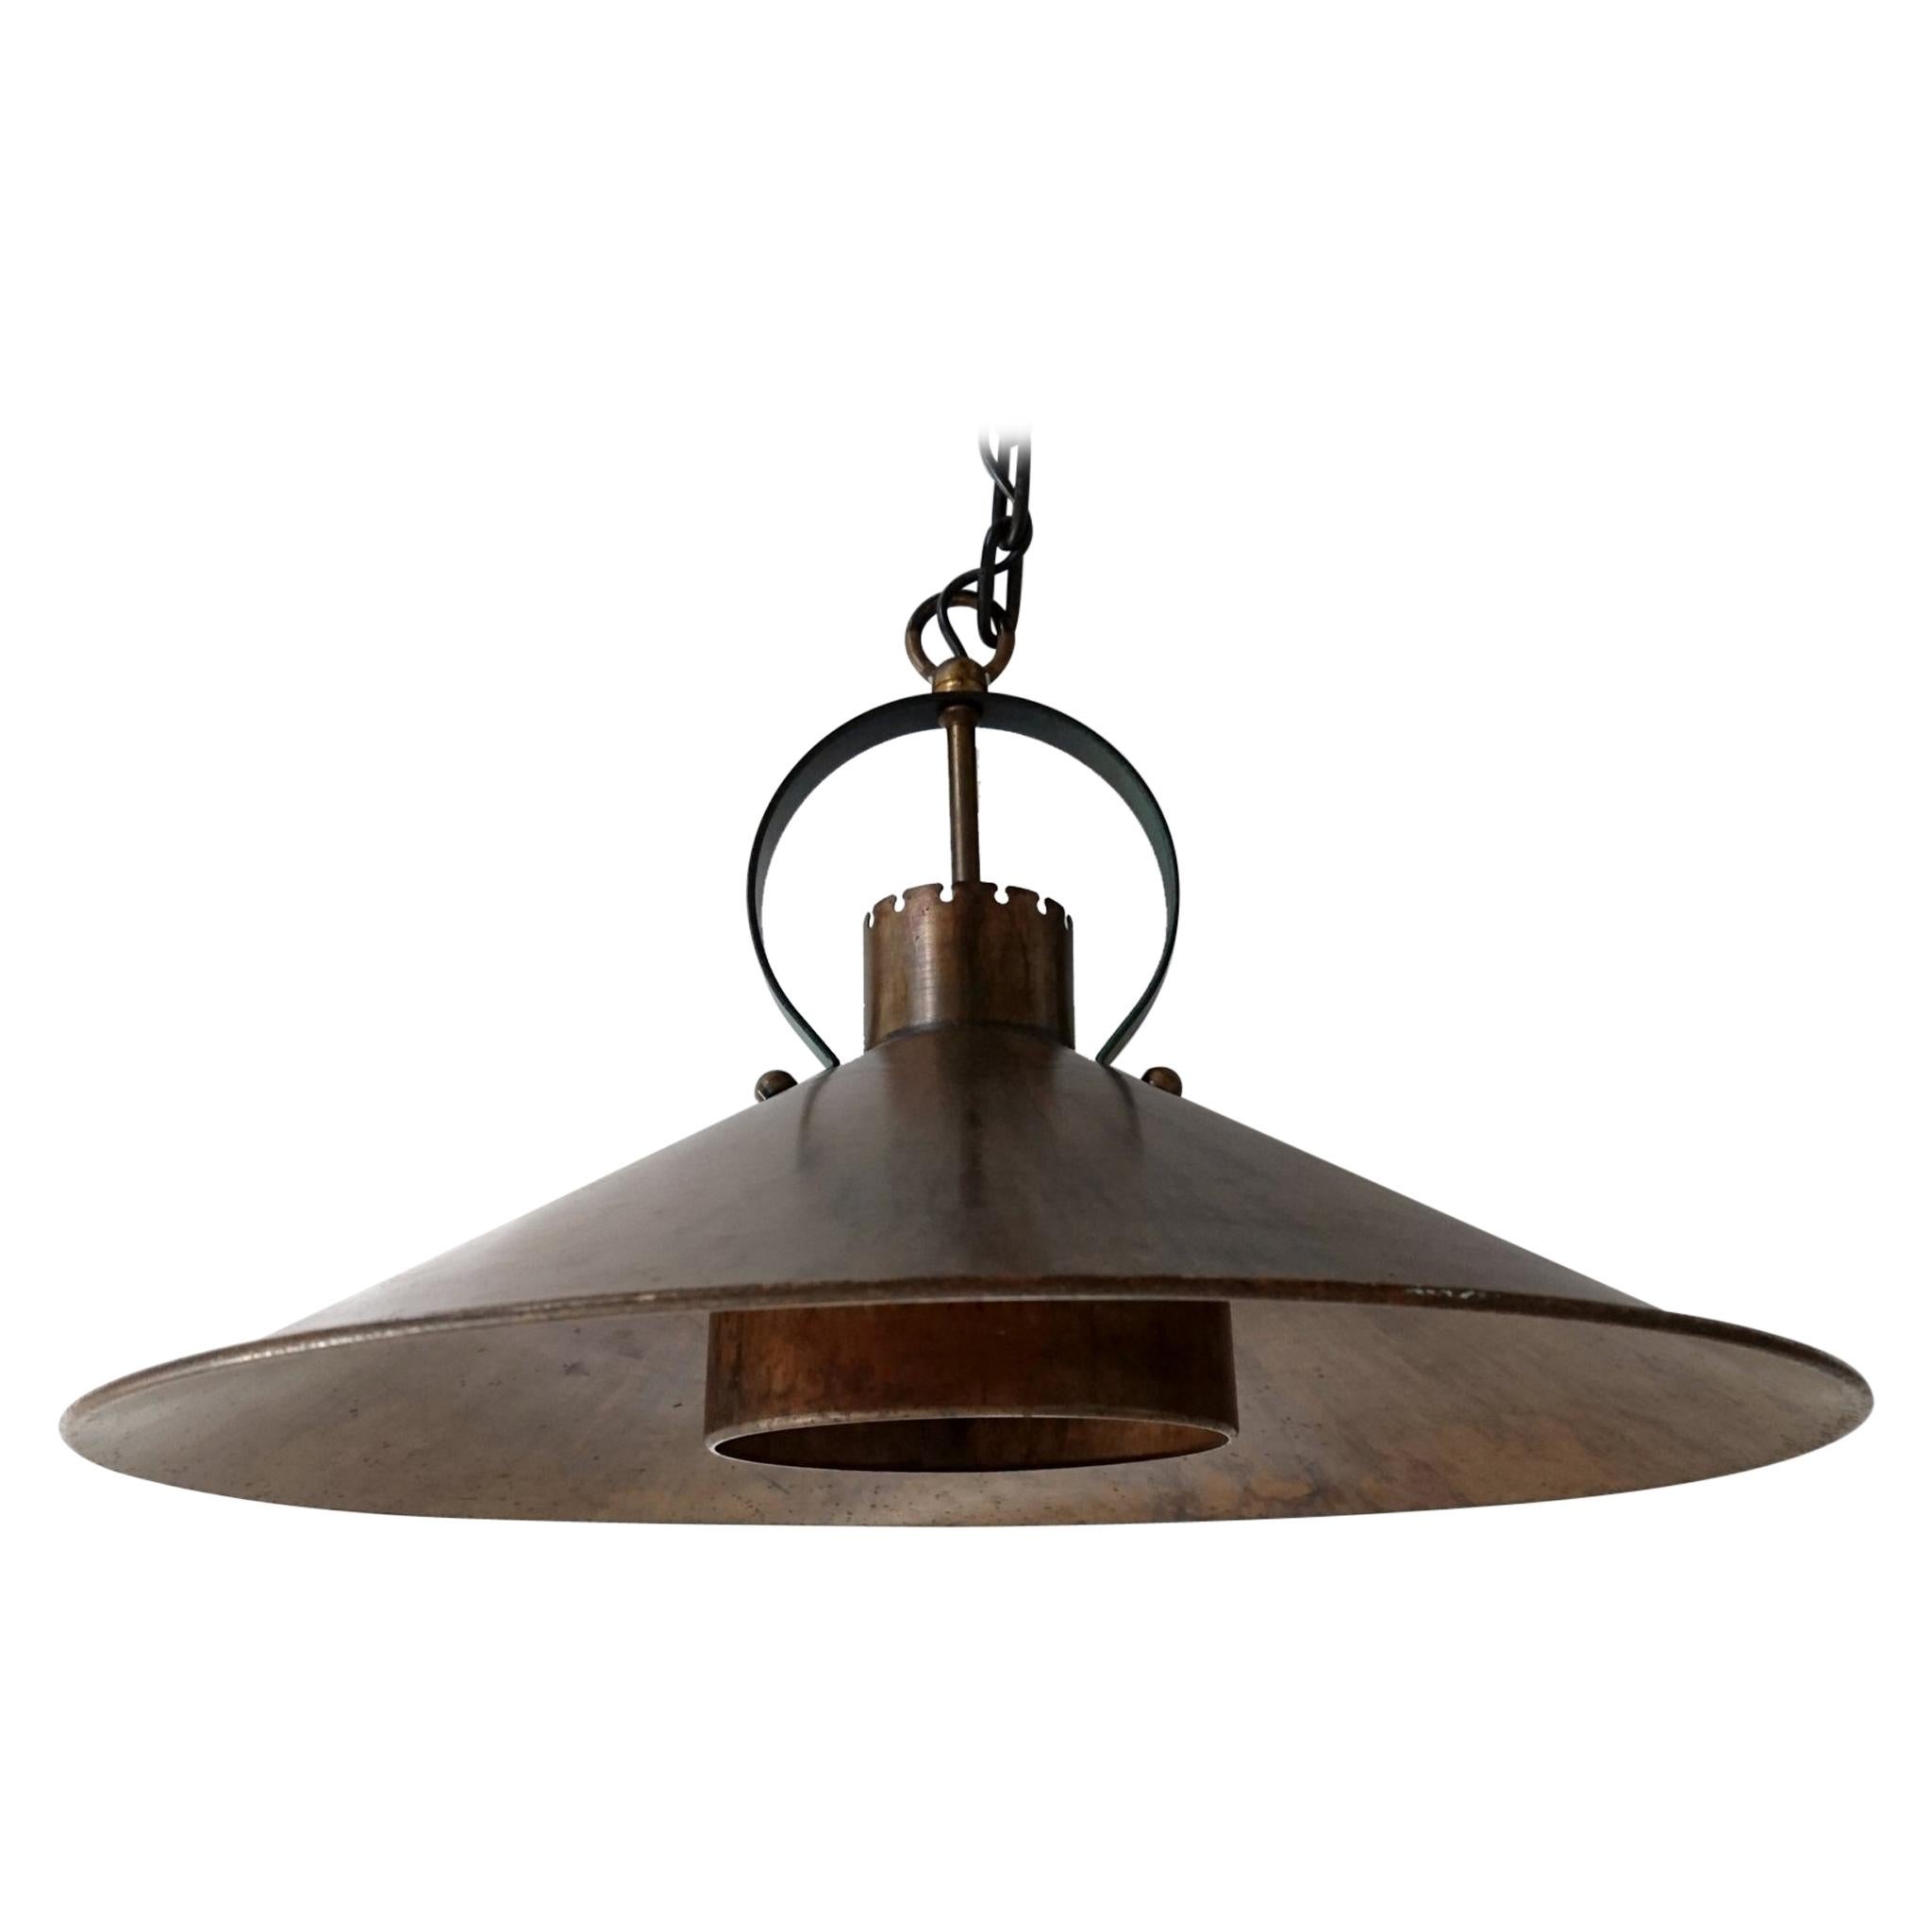 Midcentury Copper Danish Ceiling Lamp